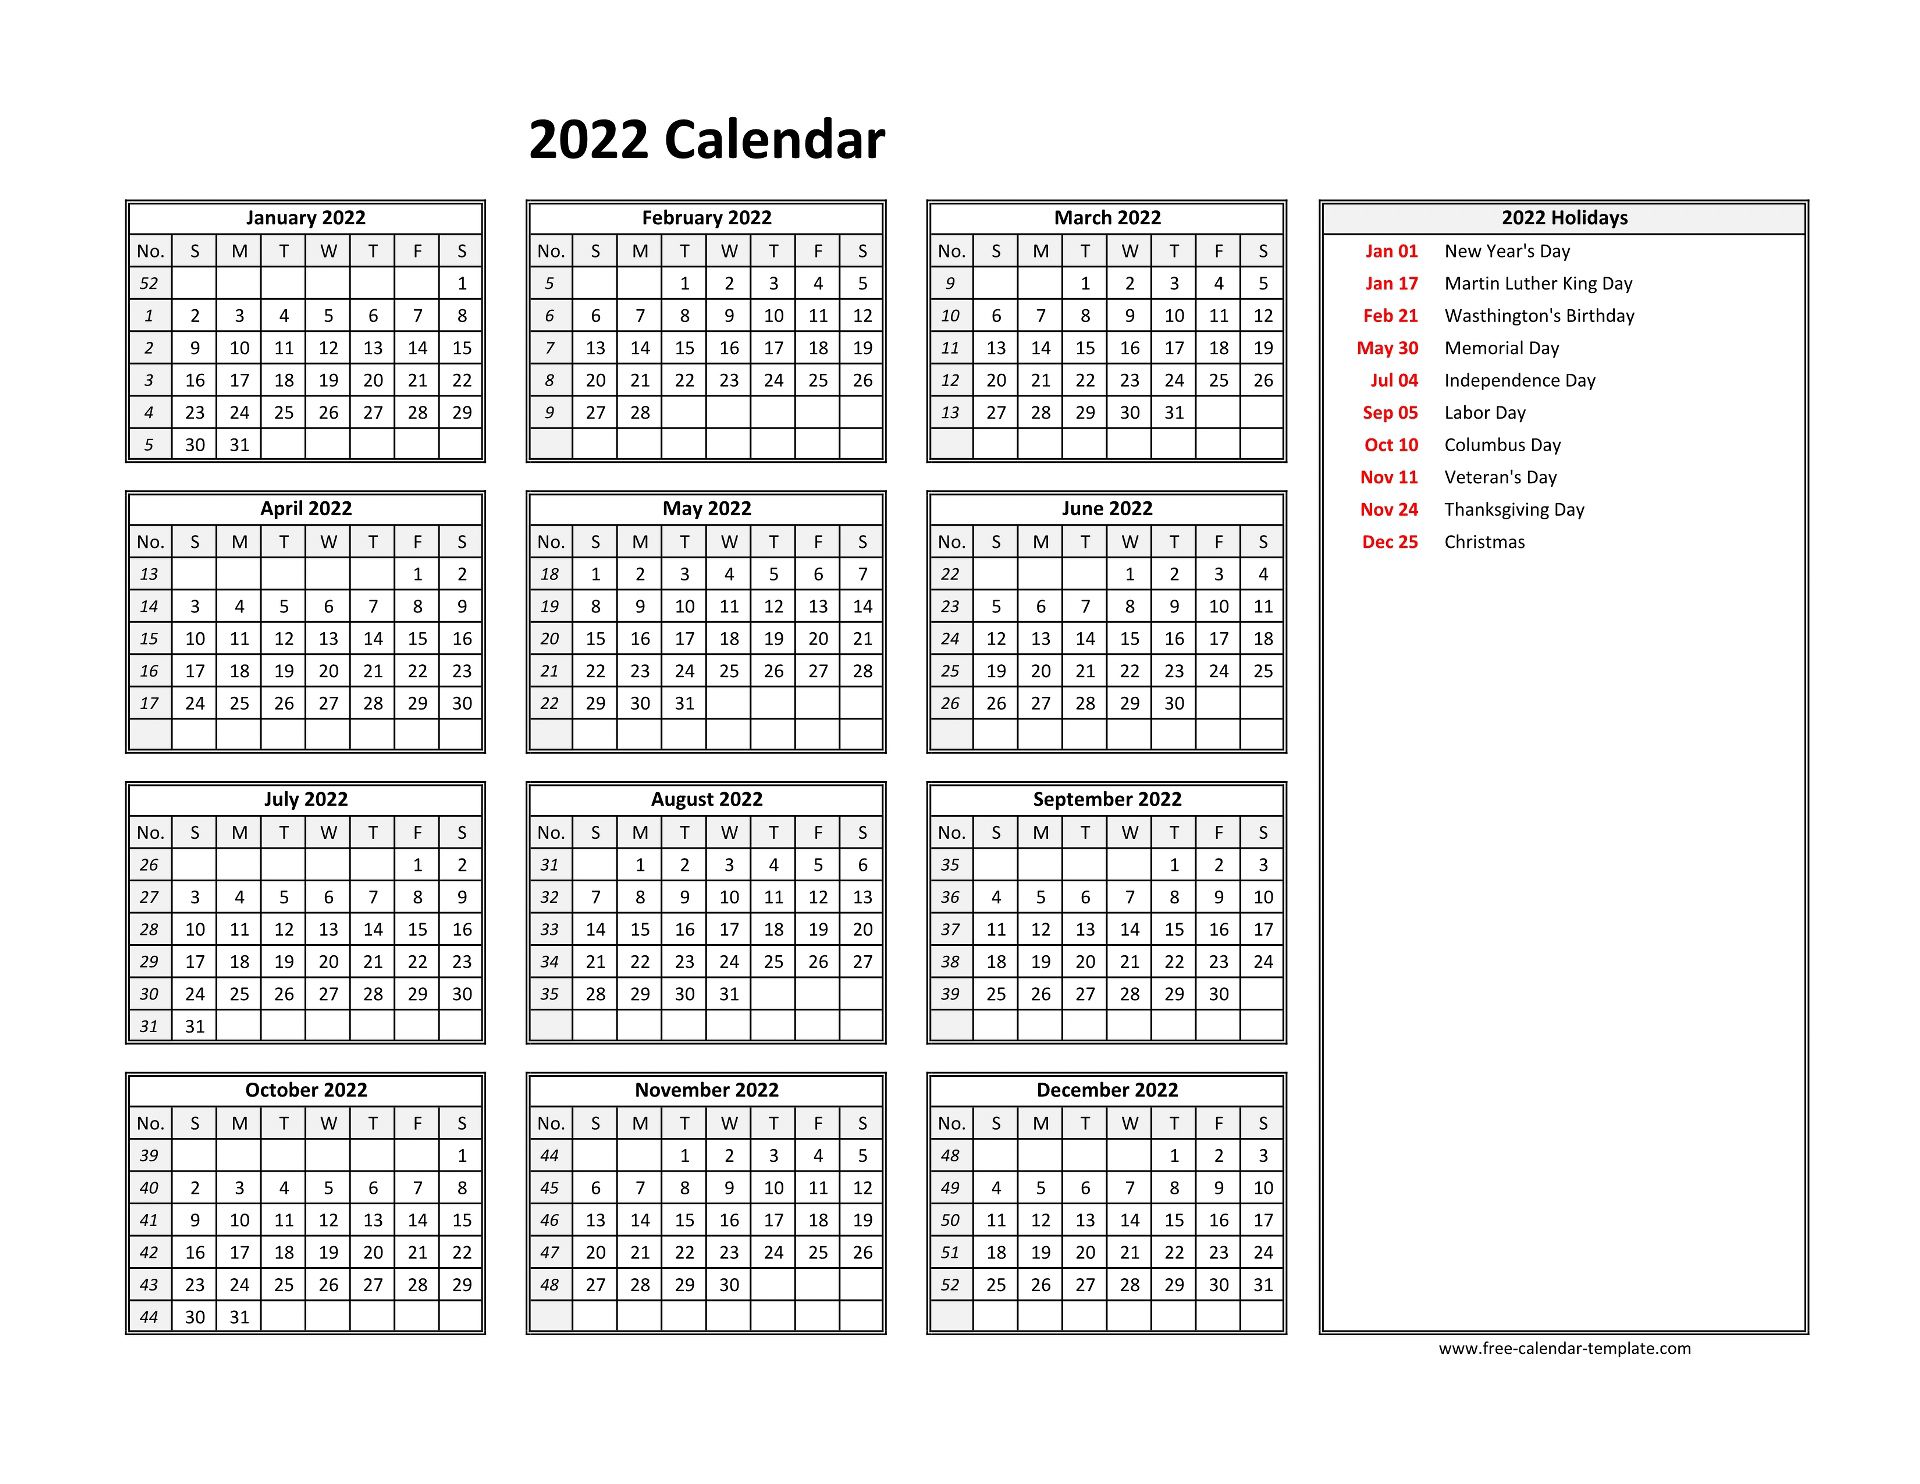 2022 Yearly Calendar Printable With Week Numbers Free Calendar